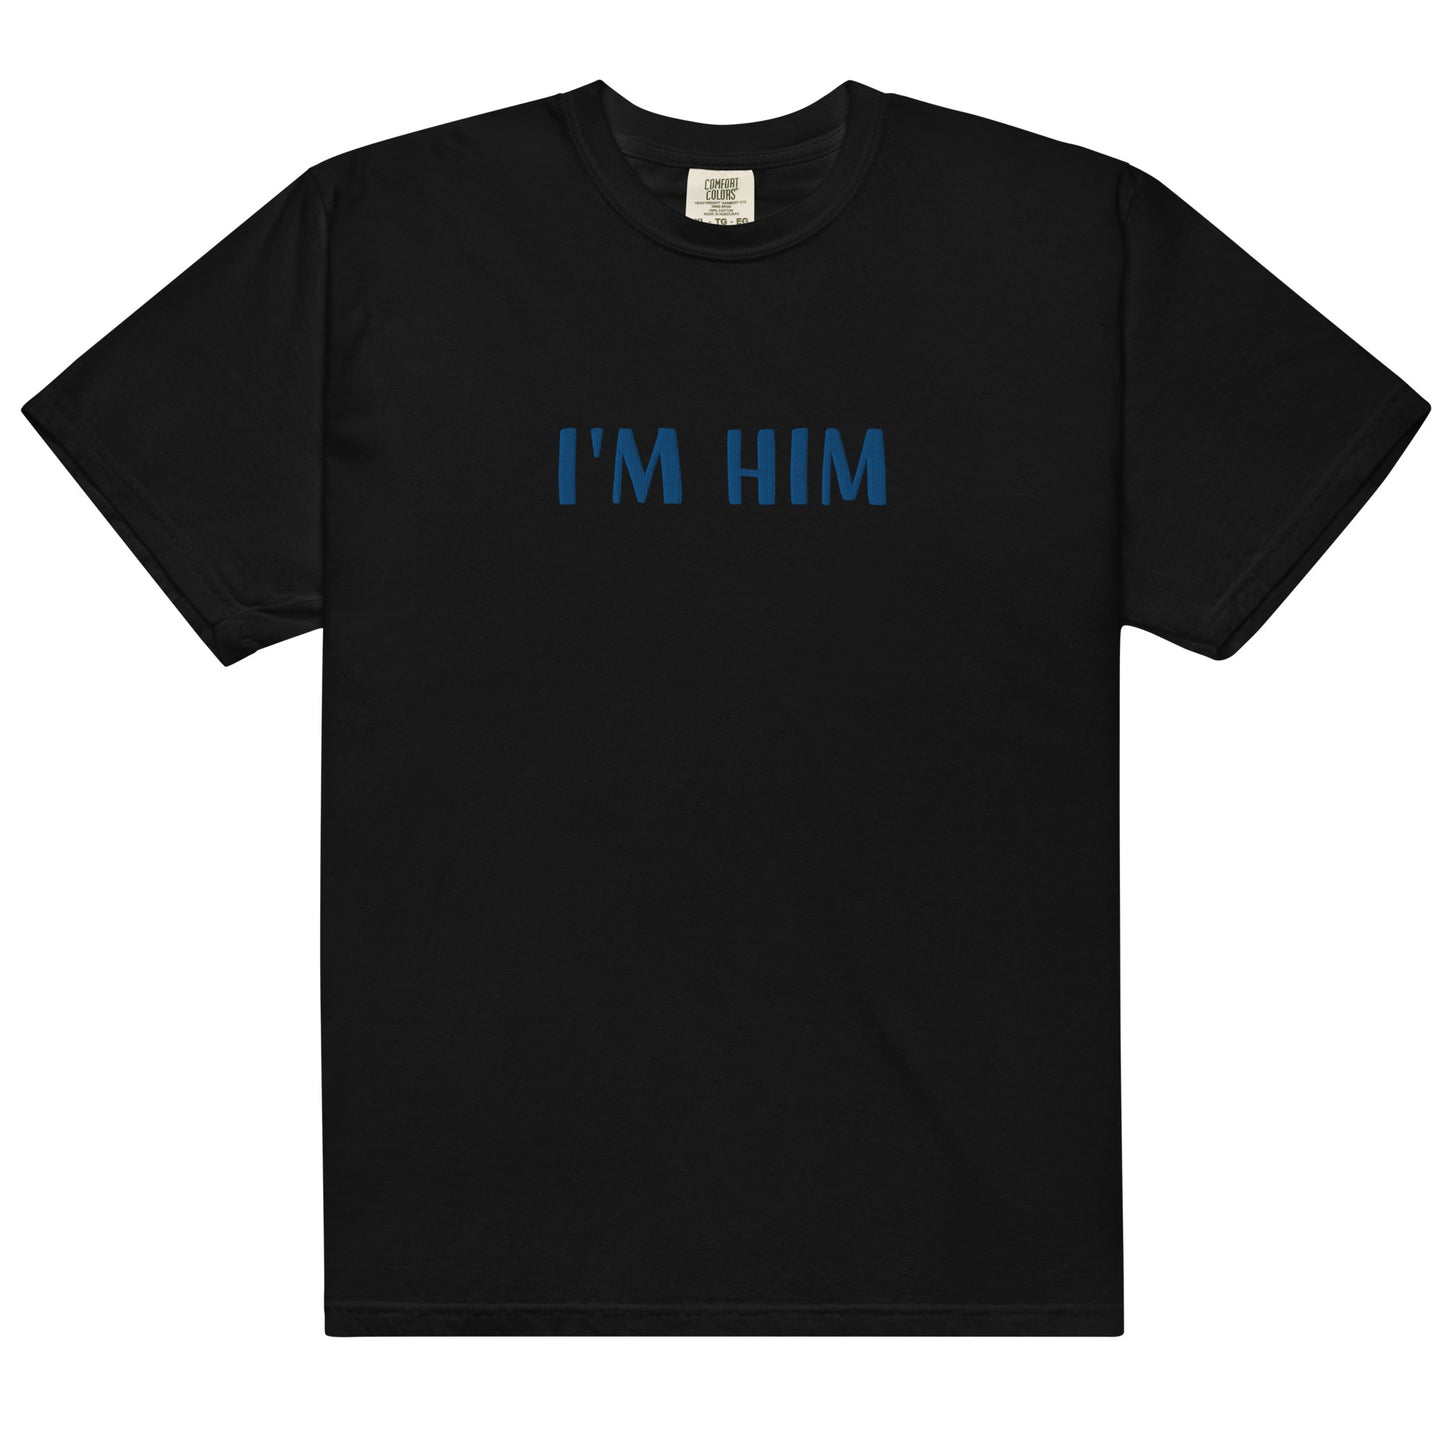 I'm him t-shirt